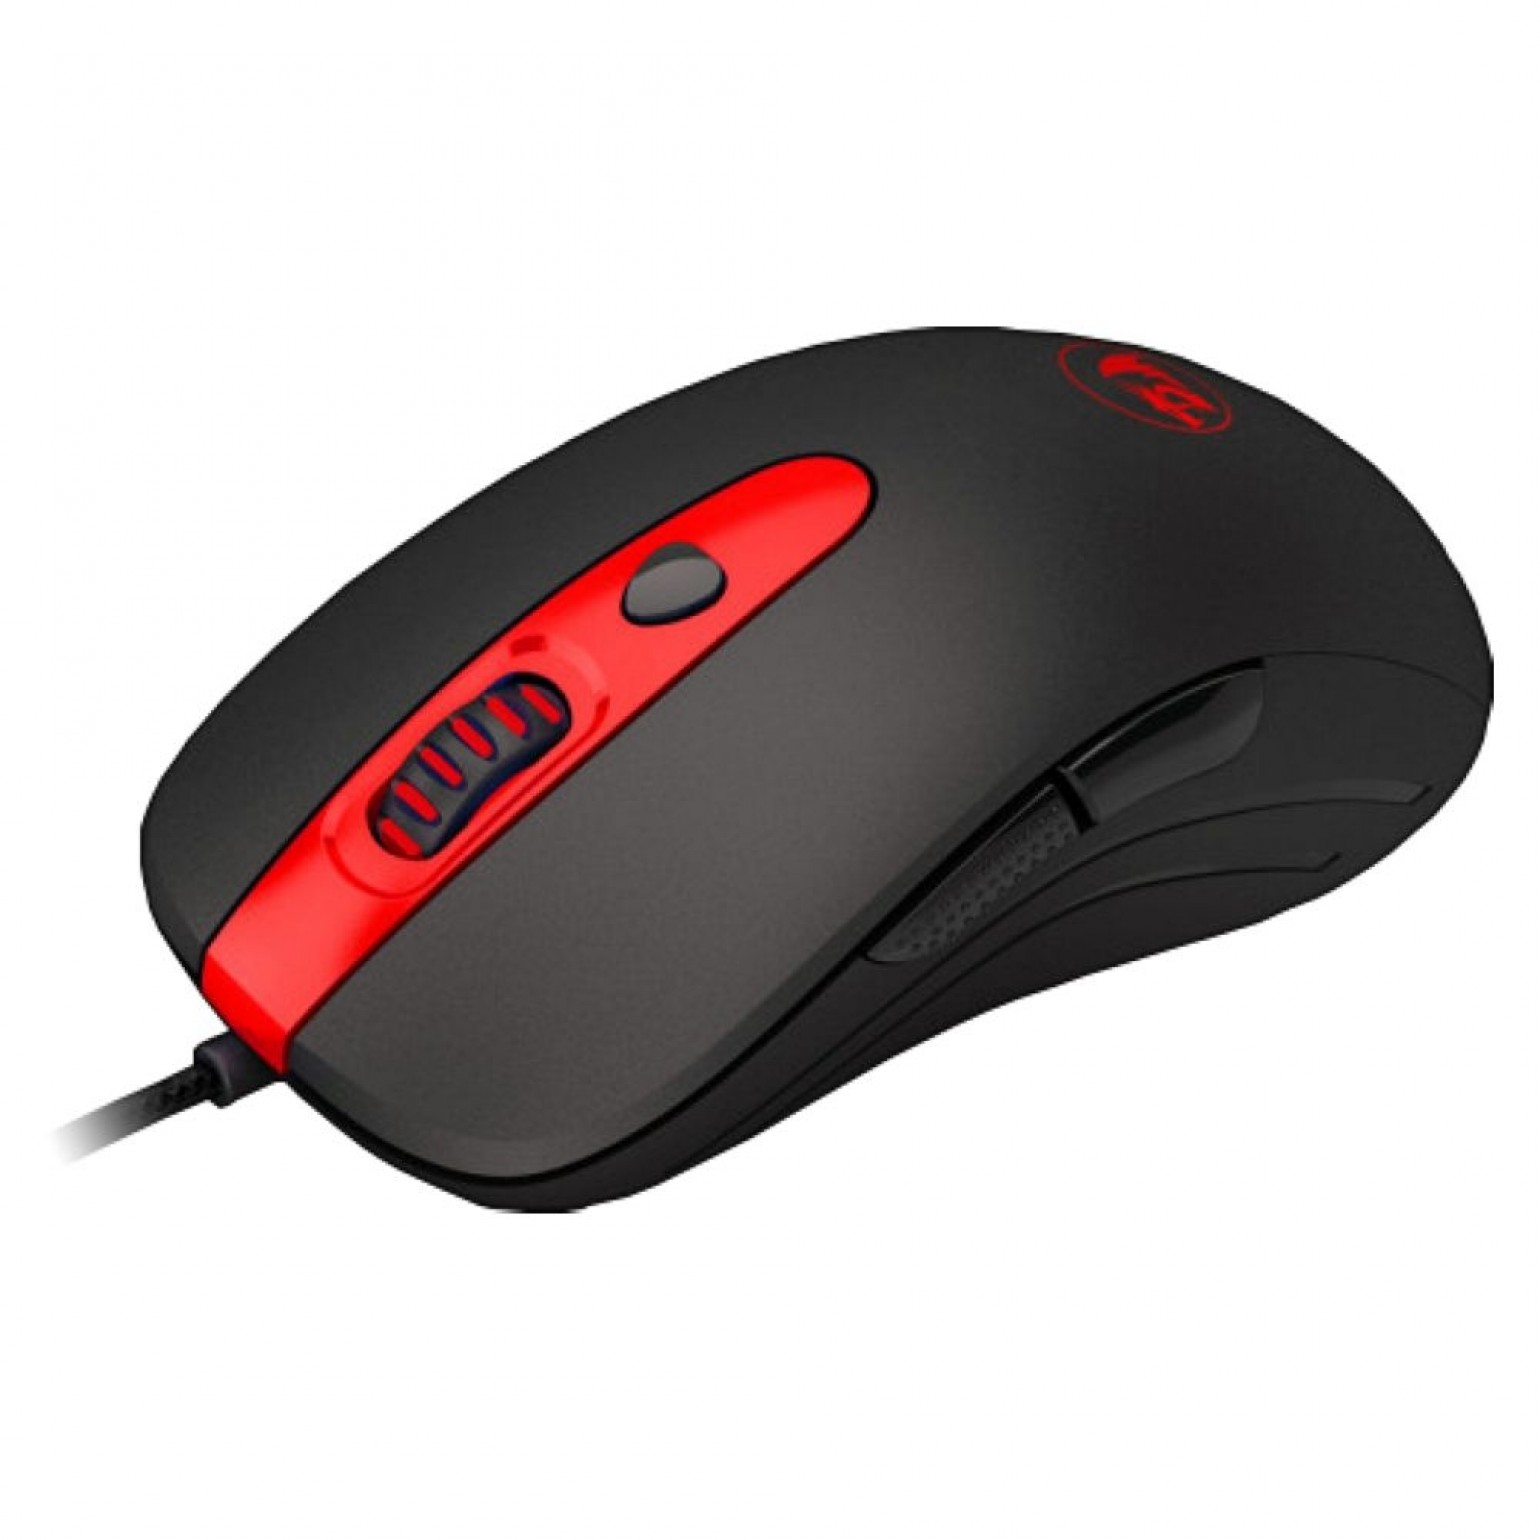 Mouse Gamer Redragon Cerberus RGB, Ambidestro, 7200 DPI, 6 Botões Programáveis, Preto - M703